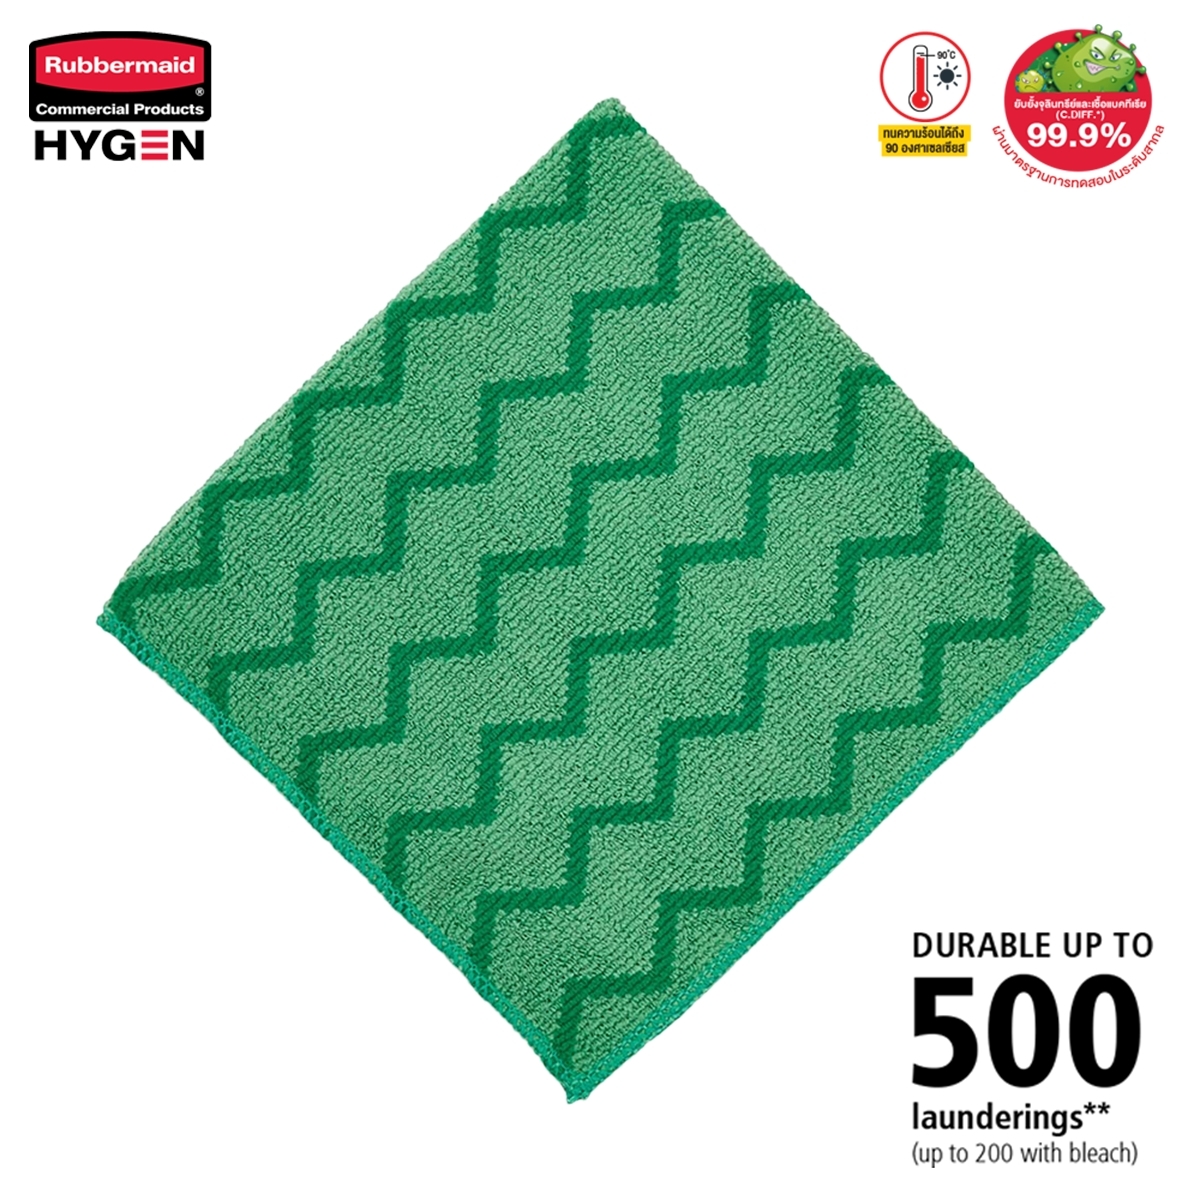 ผ้าไมโครไฟเบอร์ HYGEN™ ขนาด 16 นิ้ว สีเขียว แบบซิกแซก เกรดพรีเมี่ยม ซักน้ำร้อน และเข้าเครื่องอบได้ถึง 92°C